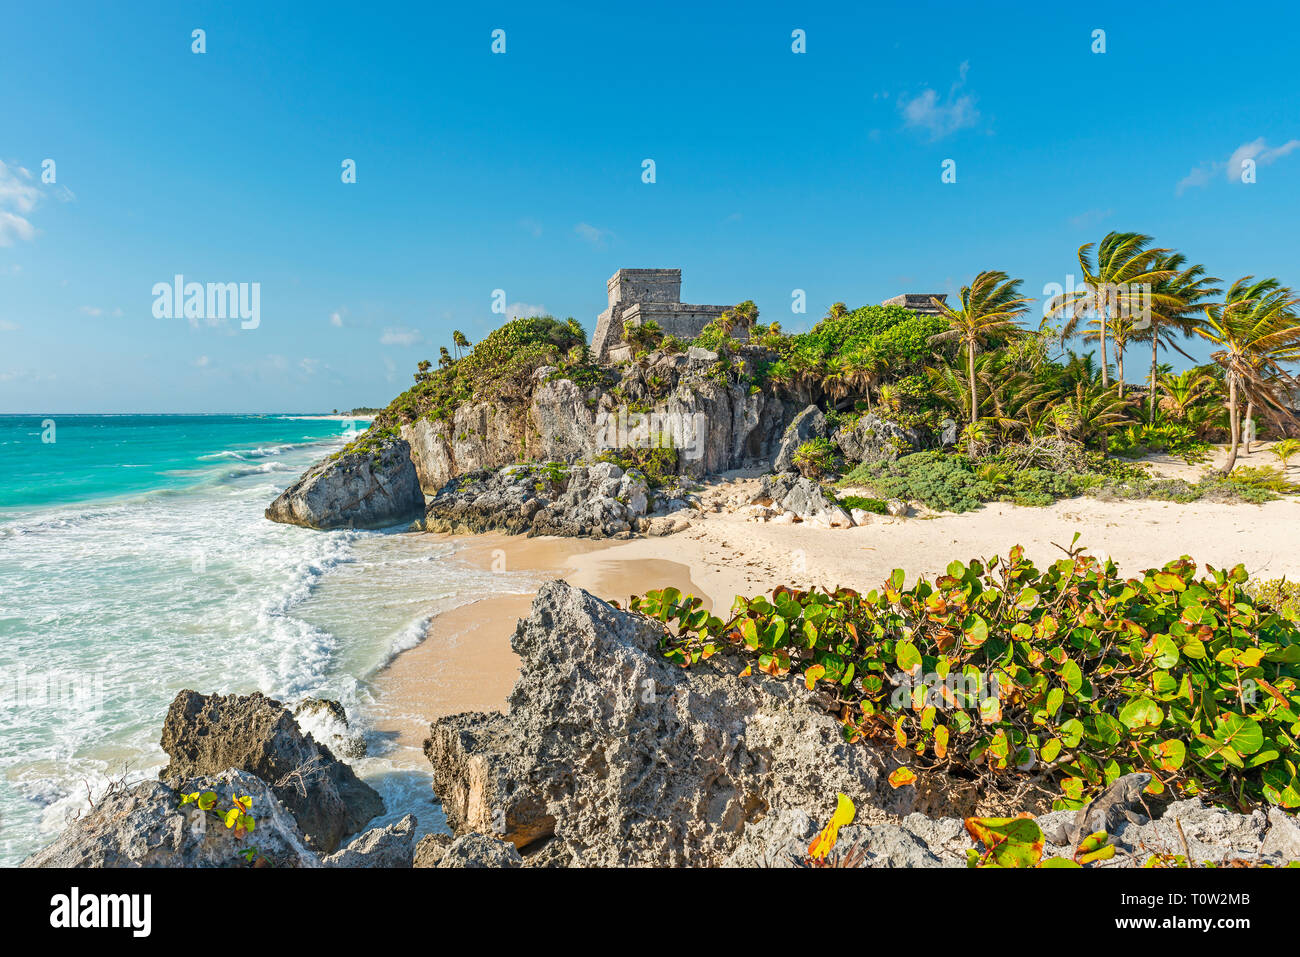 Les ruines mayas de Tulum avec sa plage idyllique au bord de la mer des Caraïbes, de l'état de Quintana Roo, Yucatan, Mexique. Banque D'Images